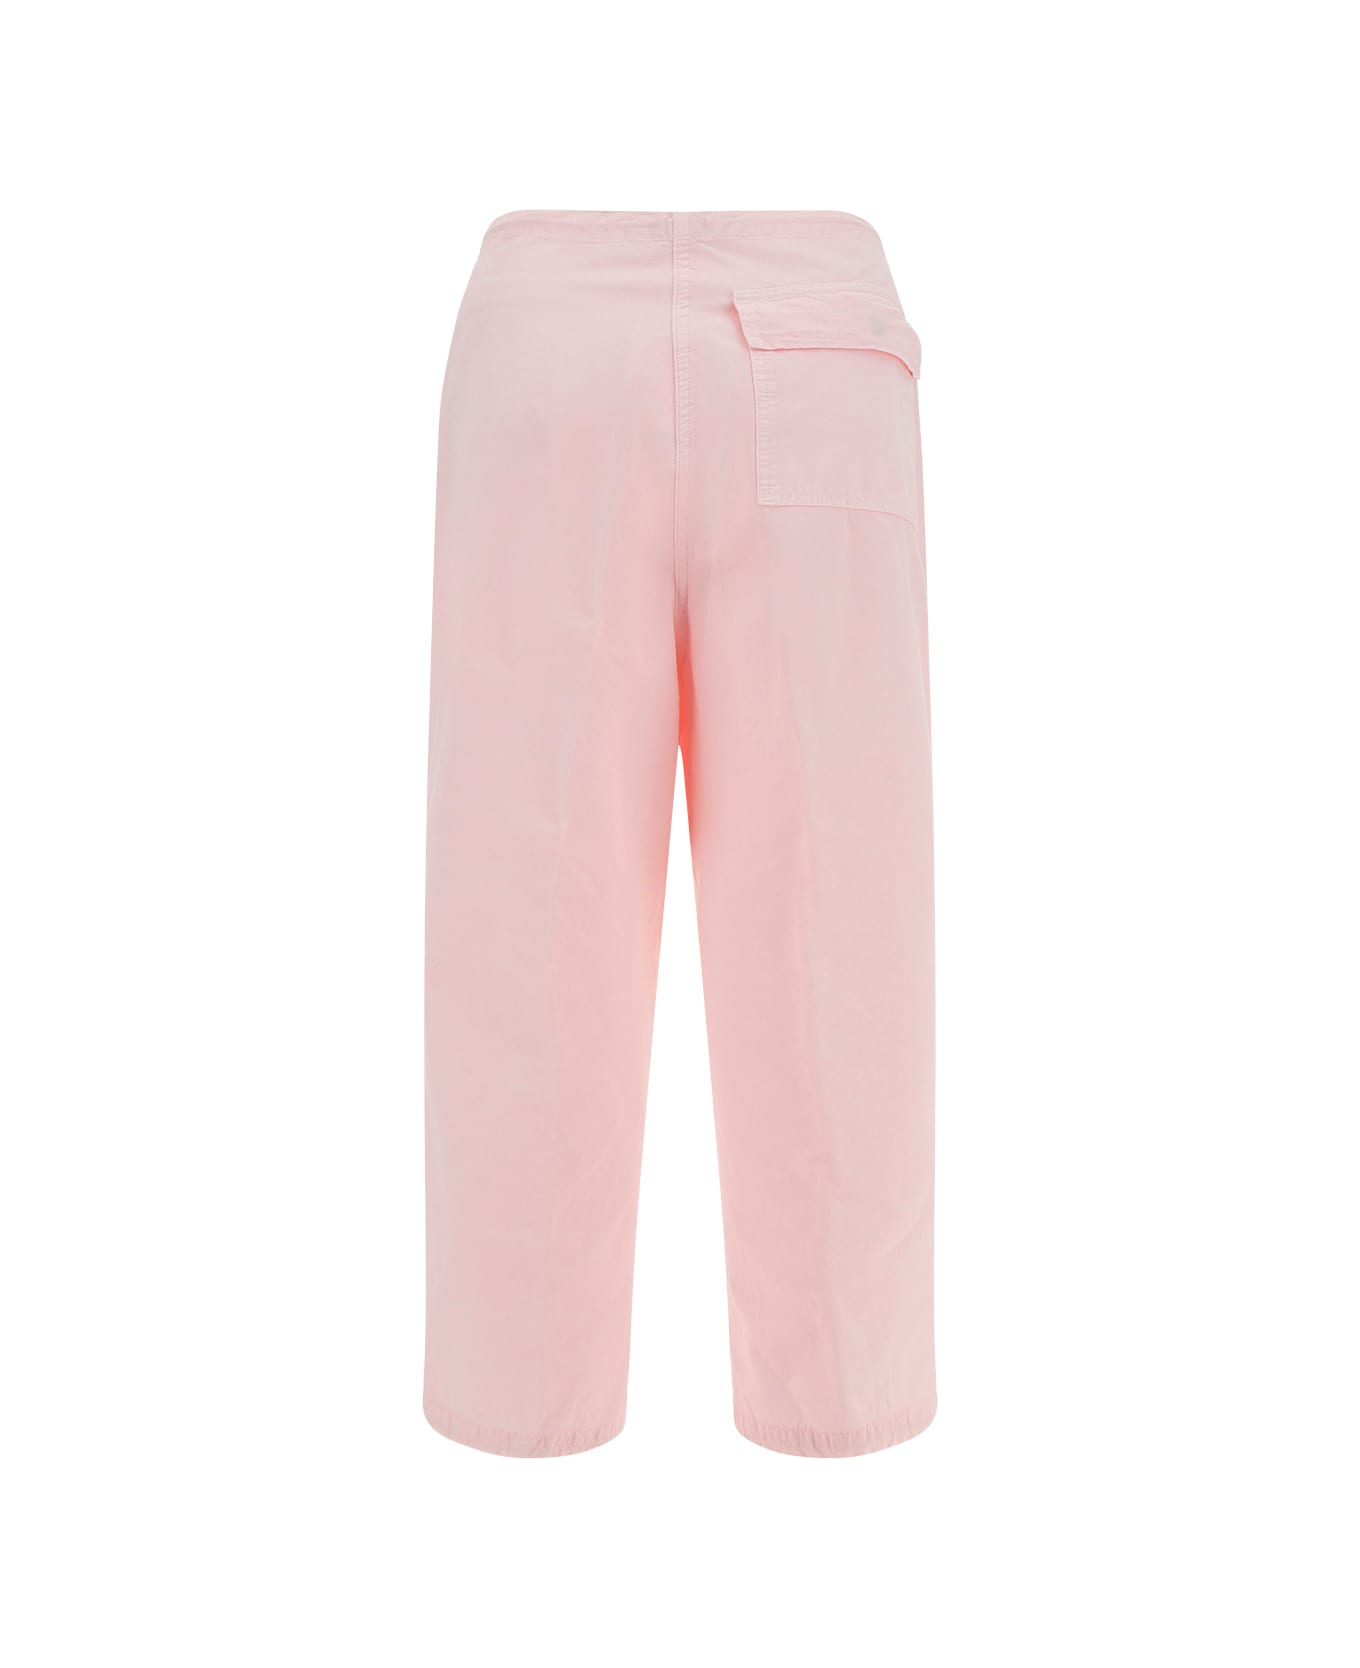 DARKPARK Blair Vintage Pants - Pwdp Powder Pink ボトムス